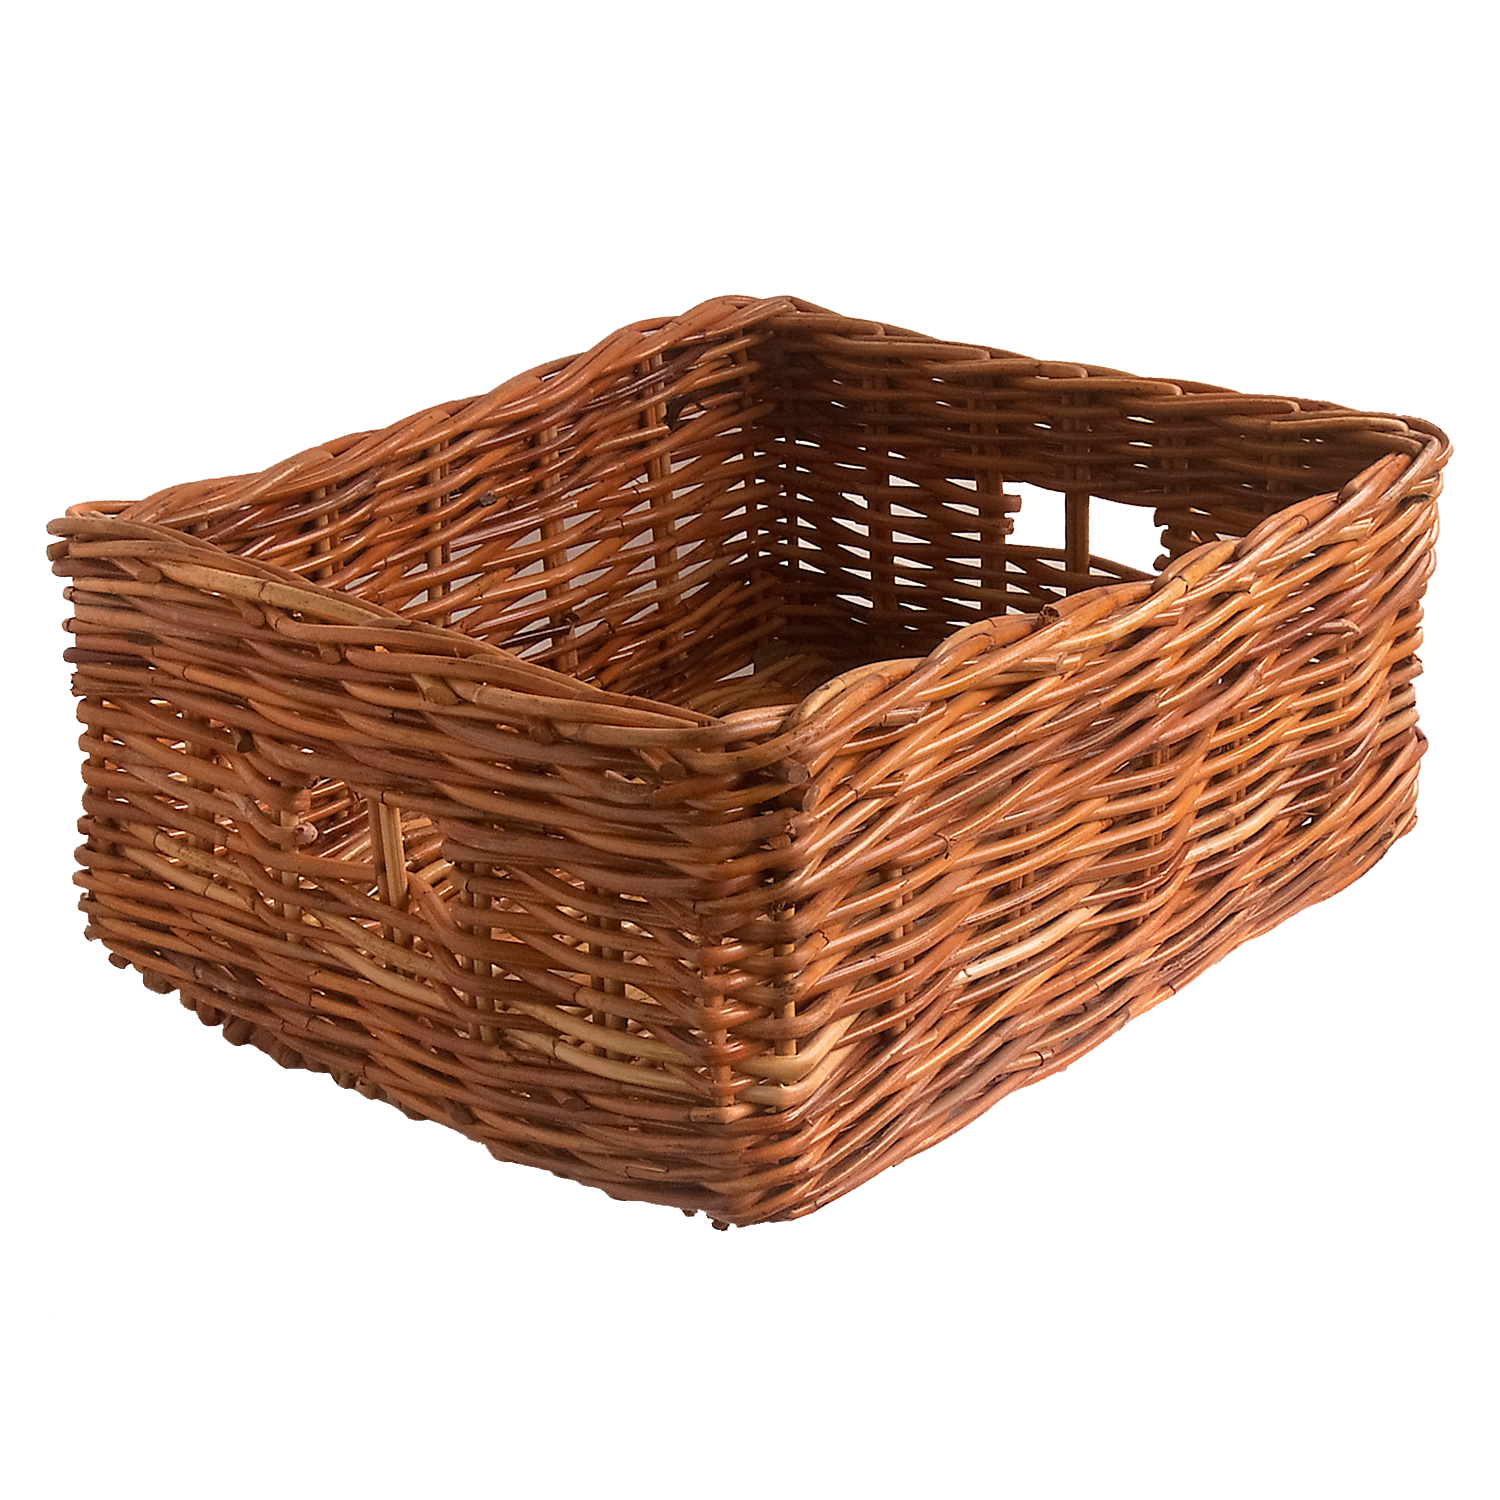 Oblong Wicker Storage Basket in 2 Sizes